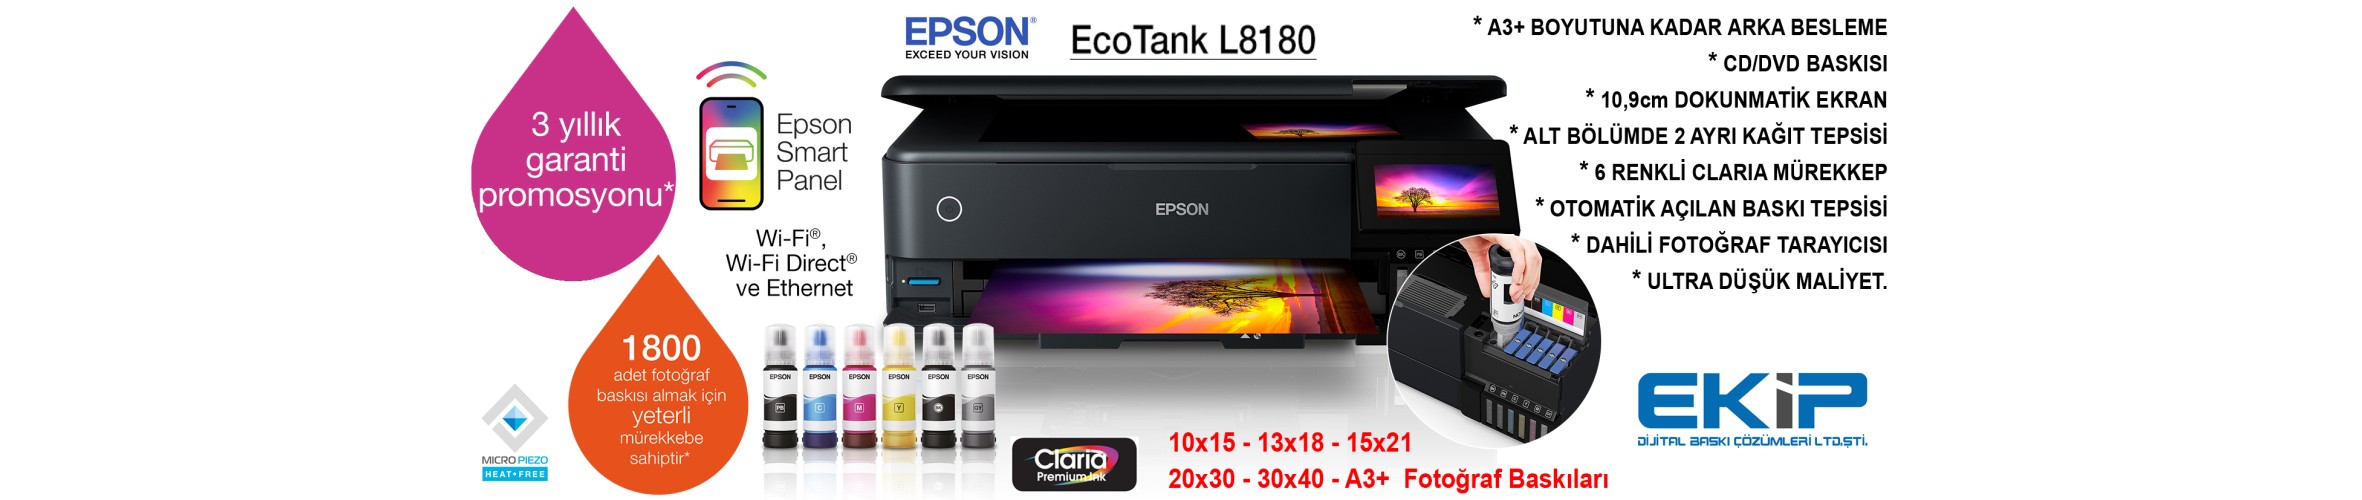 EPSON L8180